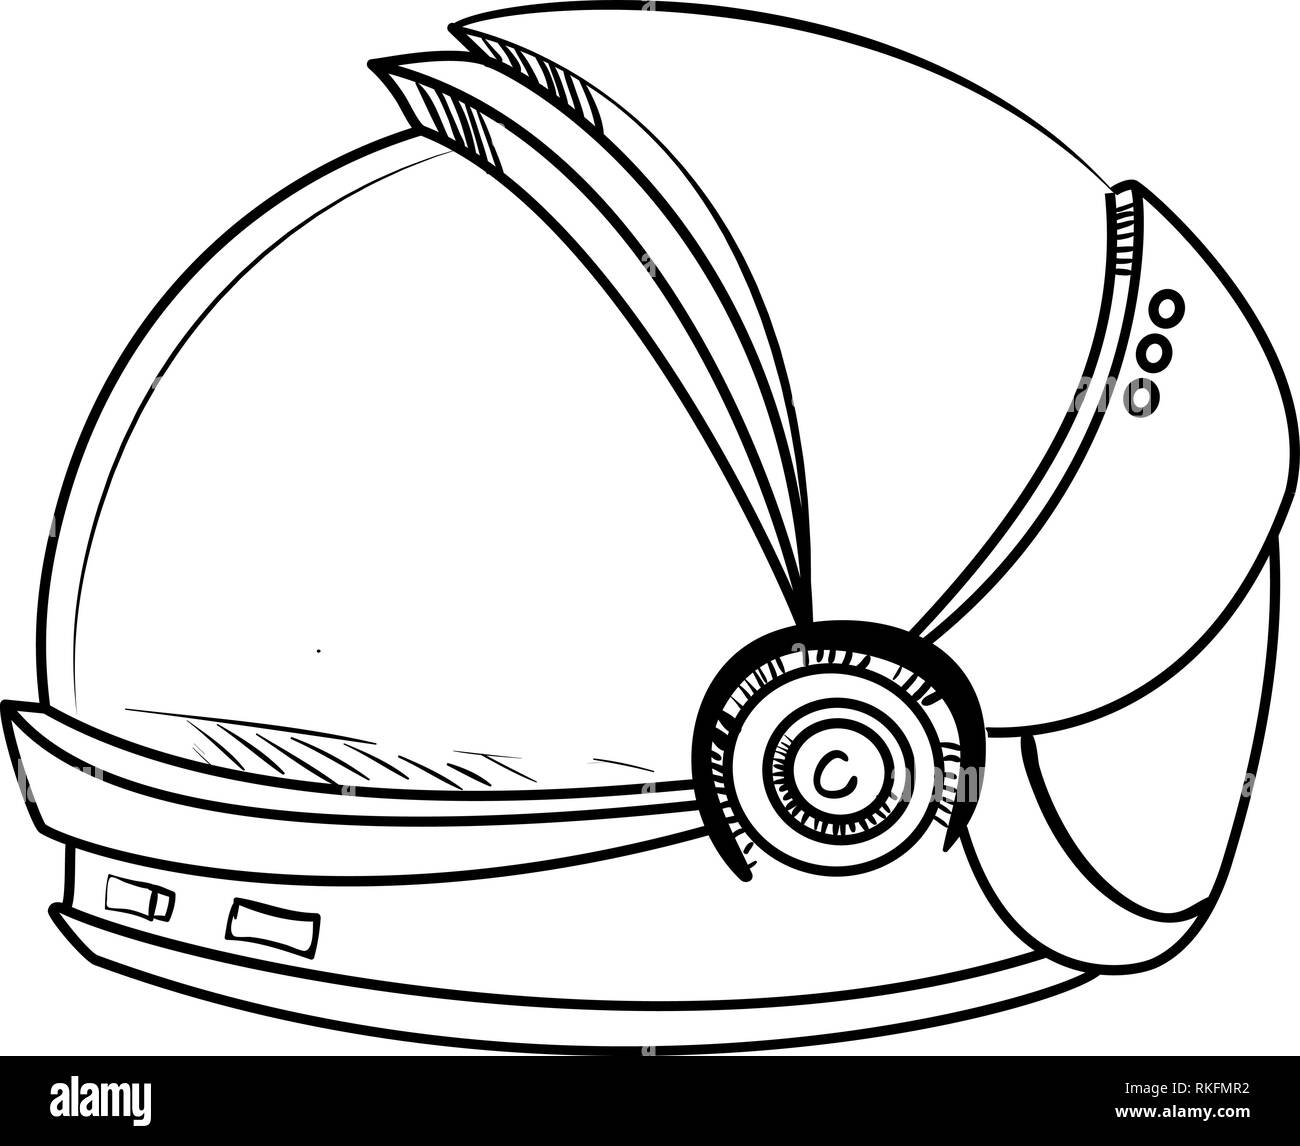 Маска космонавта раскраска. Шлем Космонавта раскраска. Шлемы для Космонавтов трафарет для детей. Скафандр шлем раскраска. Шлем Космонавта рисунок.